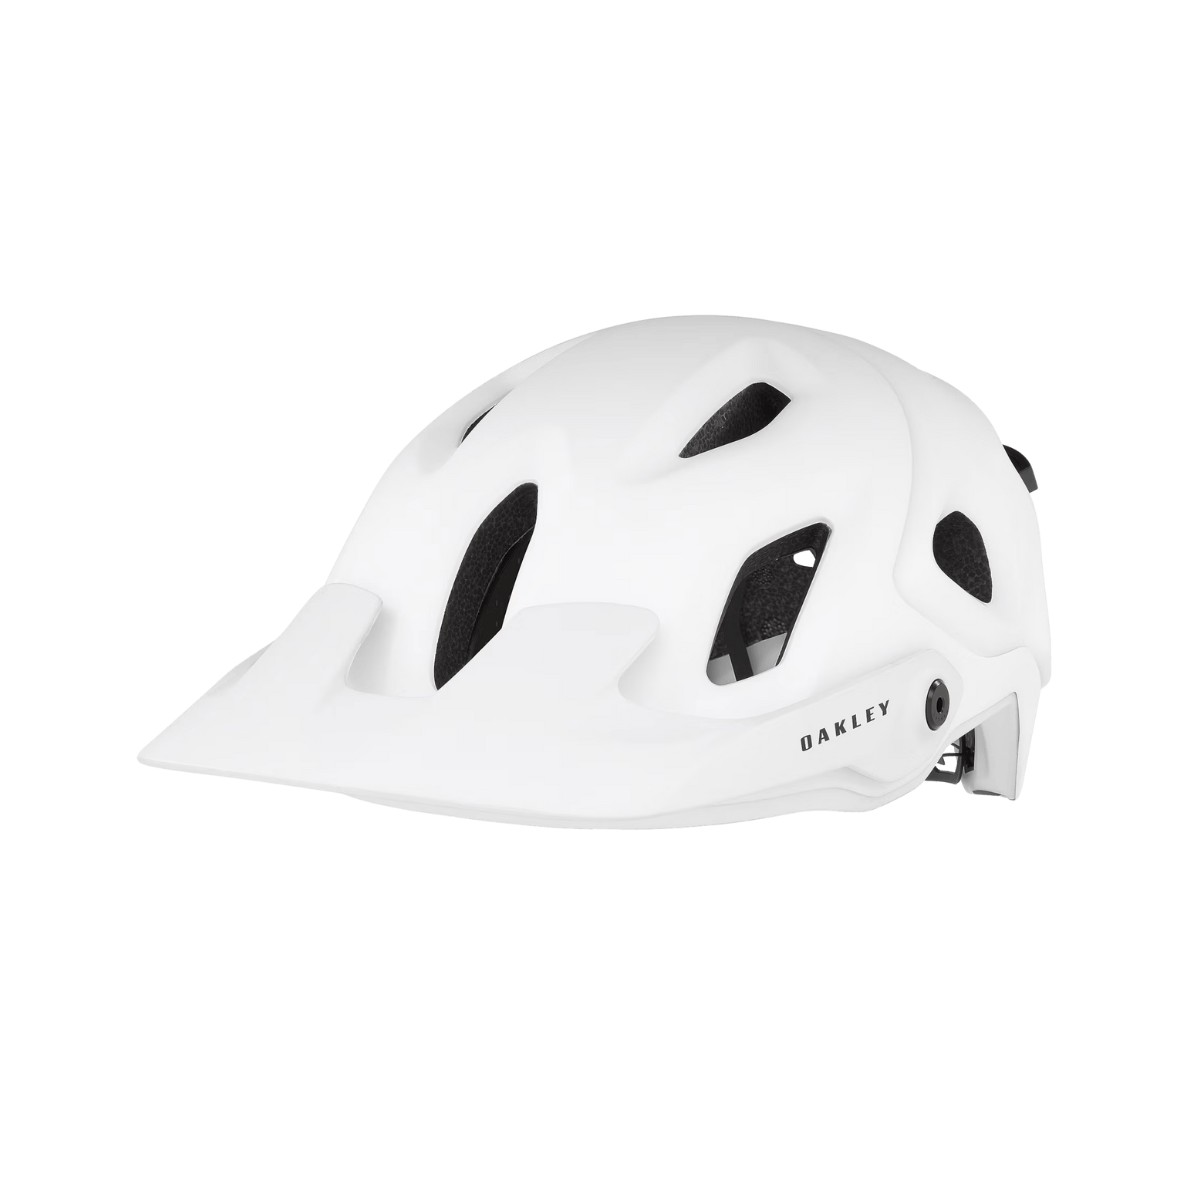 EinFach günstig Kaufen-Oakley DRT5 Mips Weißer Helm, Größe M (54-58 cm). Oakley DRT5 Mips Weißer Helm, Größe M (54-58 cm) <![CDATA[Oakley DRT5 Mips Weißer Helm Der Oakley DRT5 MIPS Helm ist ein sehr vielseitiger und einfach zu bedienender Trailhel